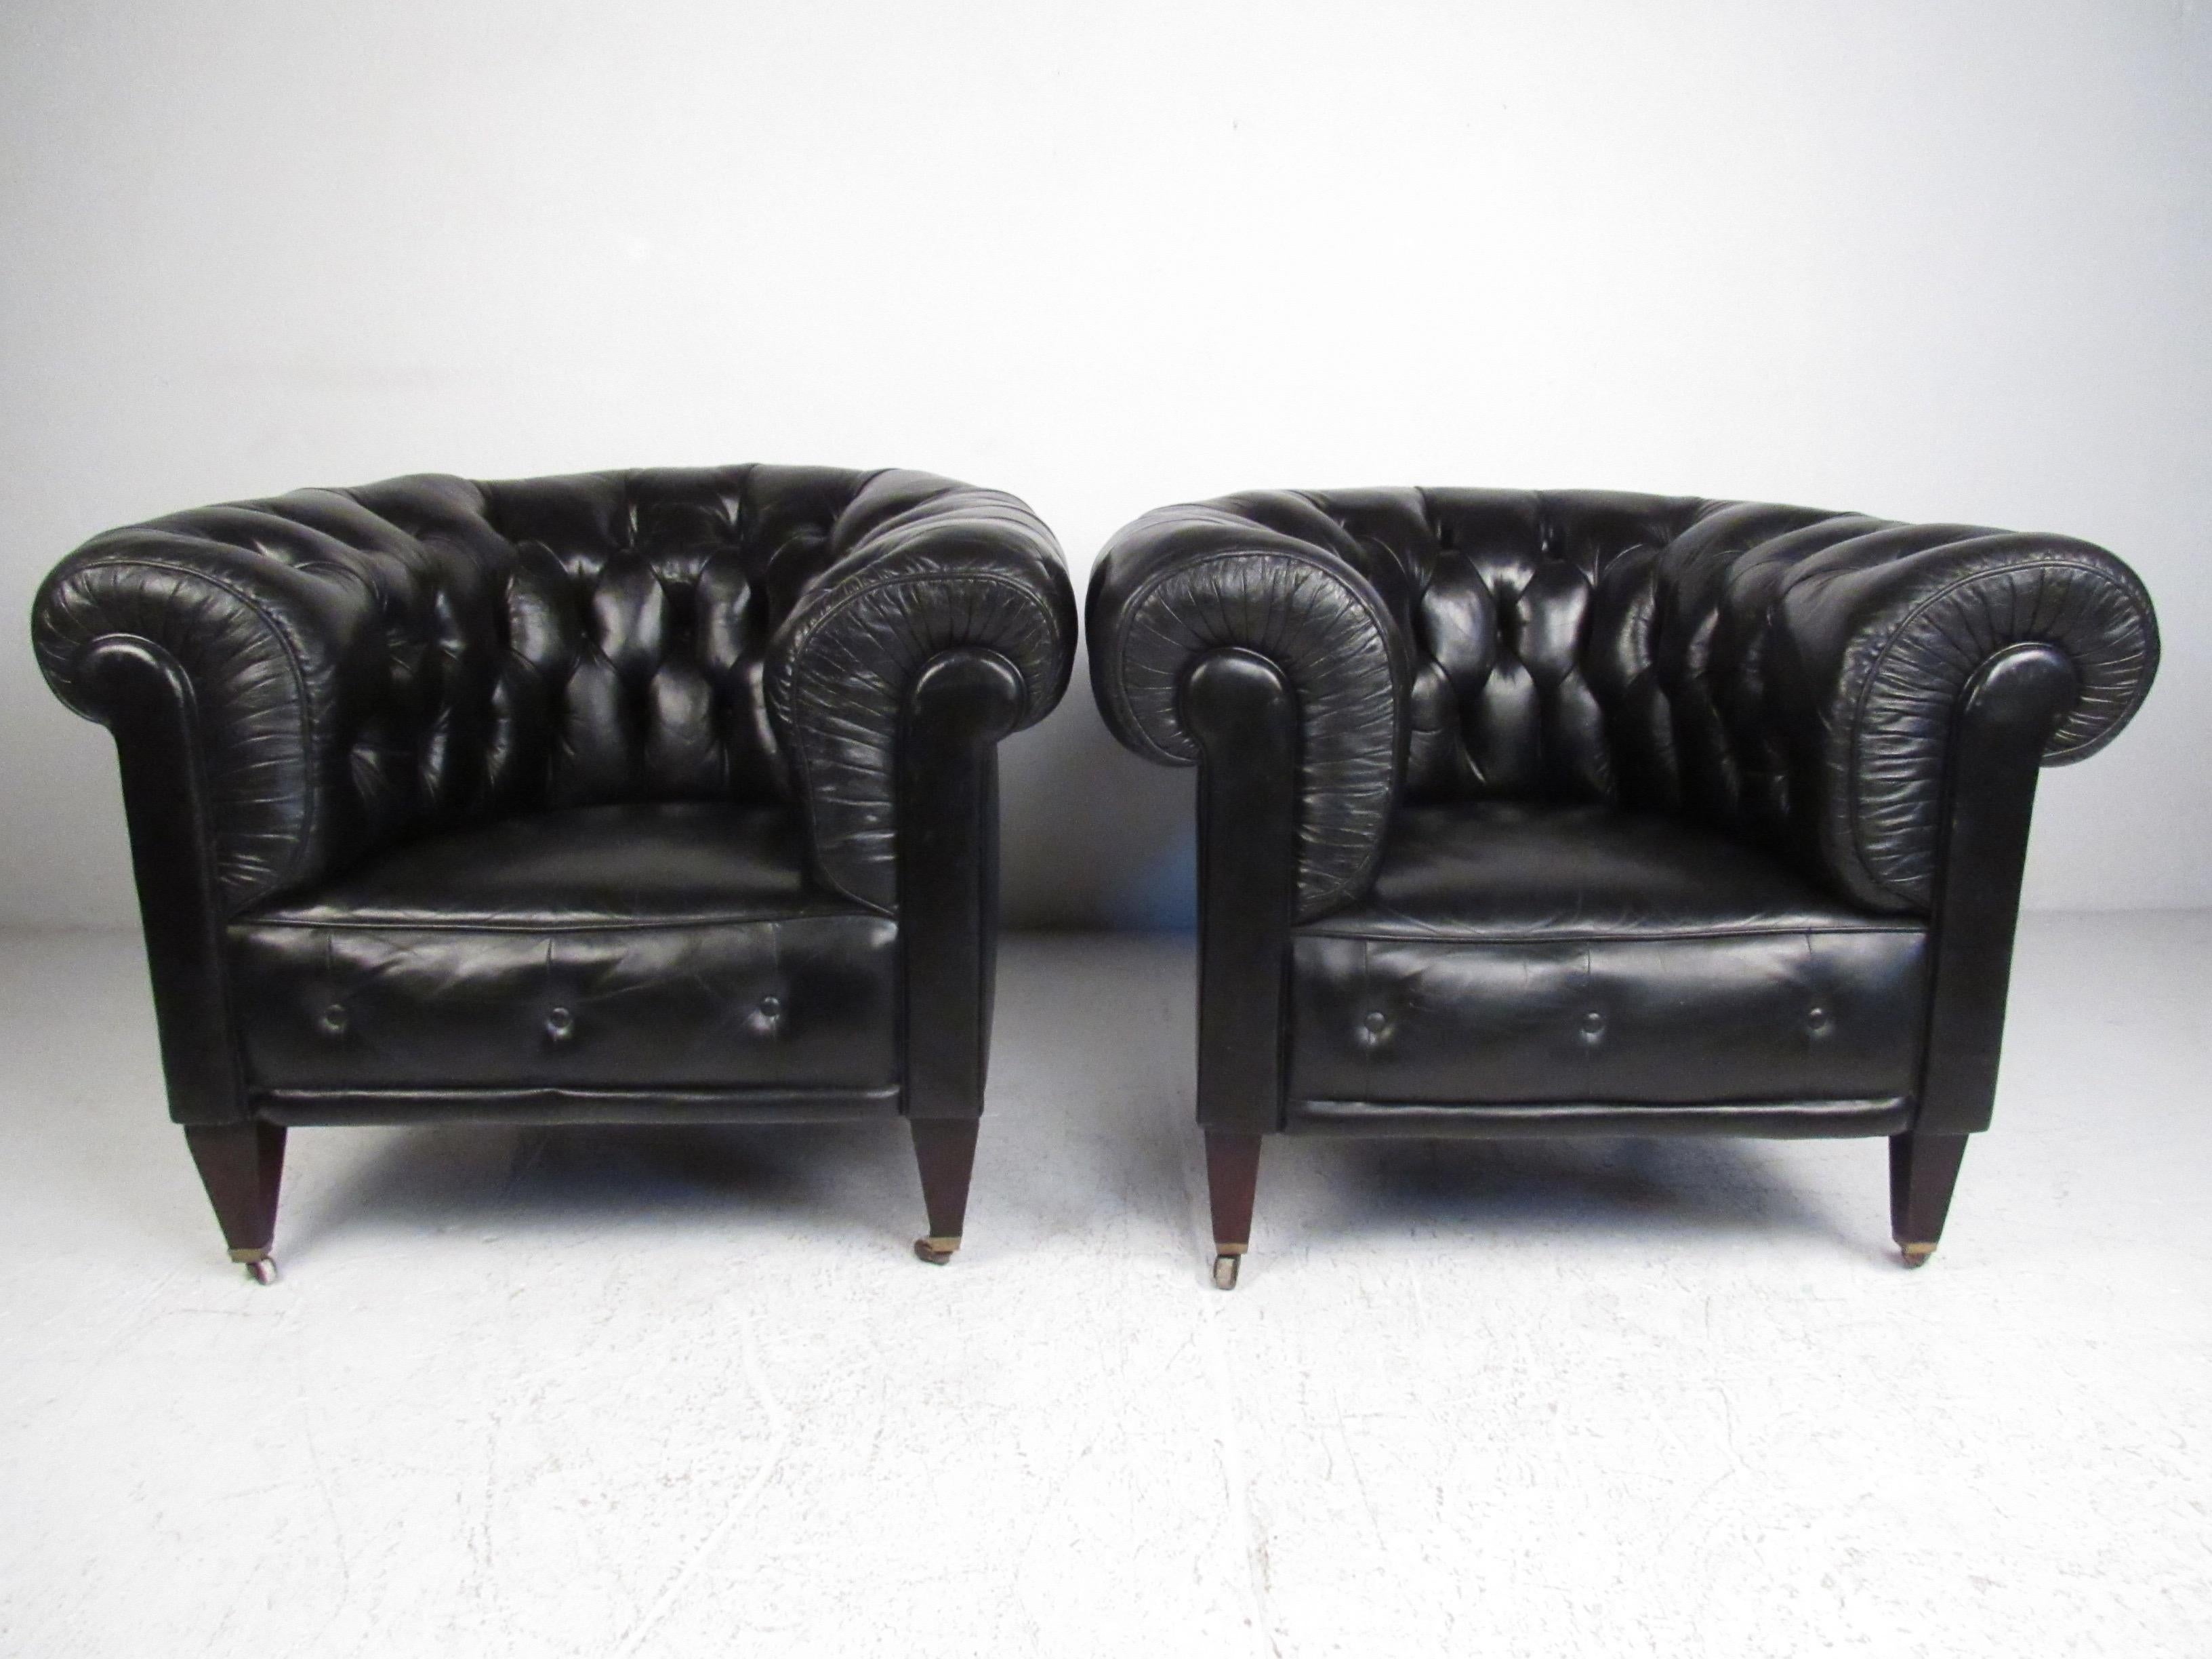 Dieses wunderschöne Set aus schwarzen Lederclubsesseln ist eine beeindruckende Ergänzung zu den Sitzgelegenheiten im Chesterfield-Stil zu Hause oder im Büro. Großzügige Proportionen, dicke verschnörkelte Armlehnen und bequeme, getuftete Polsterung